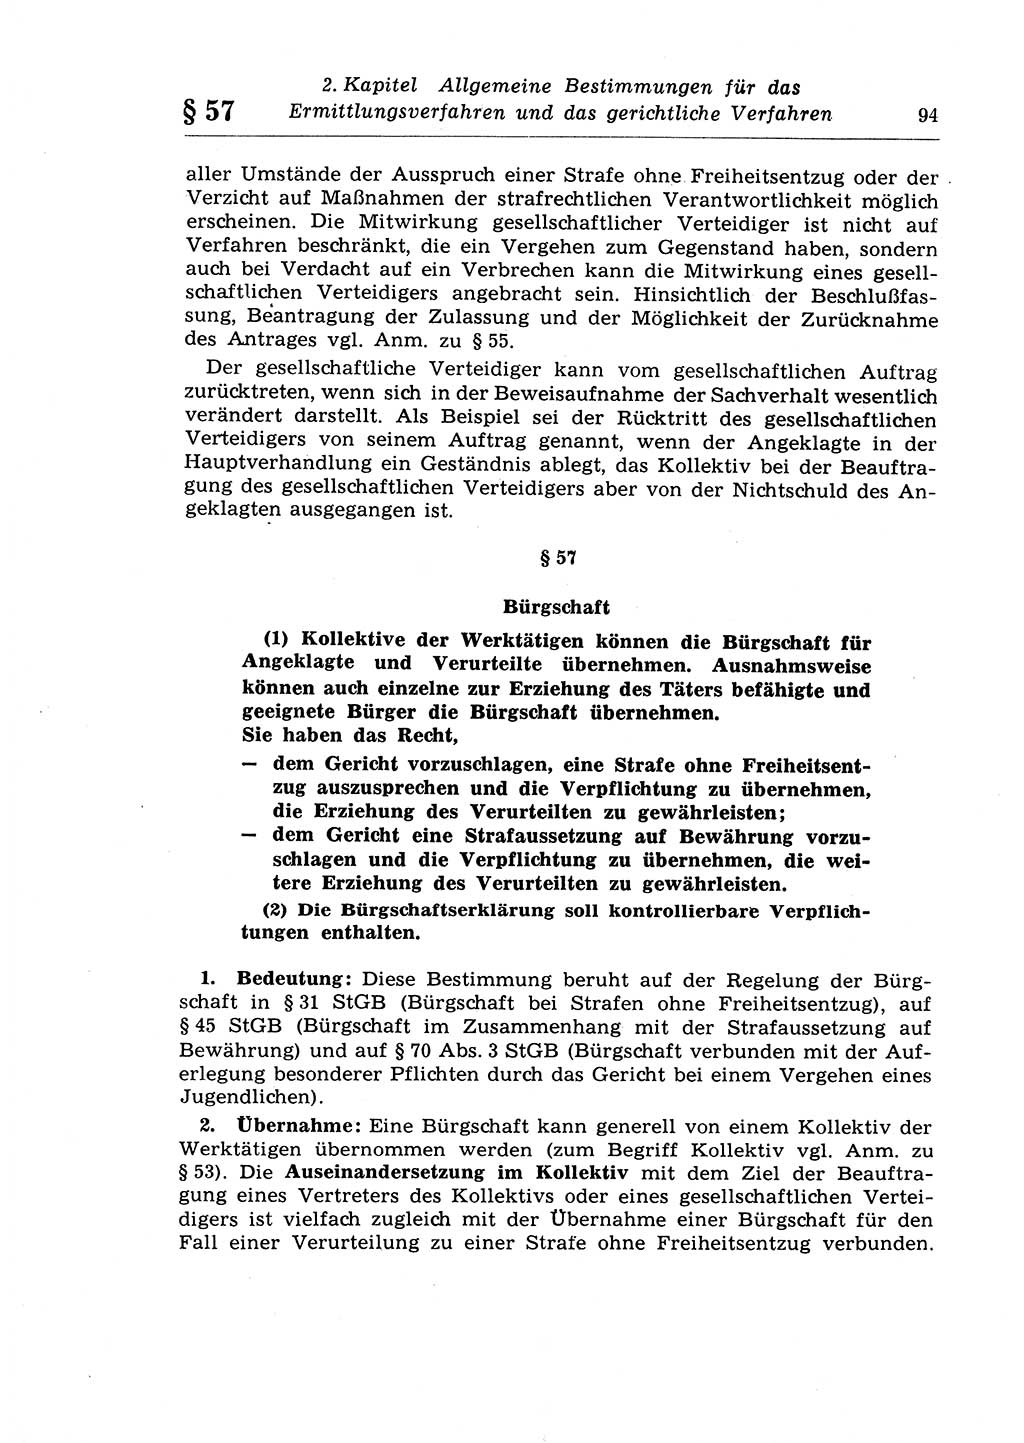 Strafprozeßrecht der DDR (Deutsche Demokratische Republik), Lehrkommentar zur Strafprozeßordnung (StPO) 1968, Seite 94 (Strafprozeßr. DDR Lehrkomm. StPO 19688, S. 94)